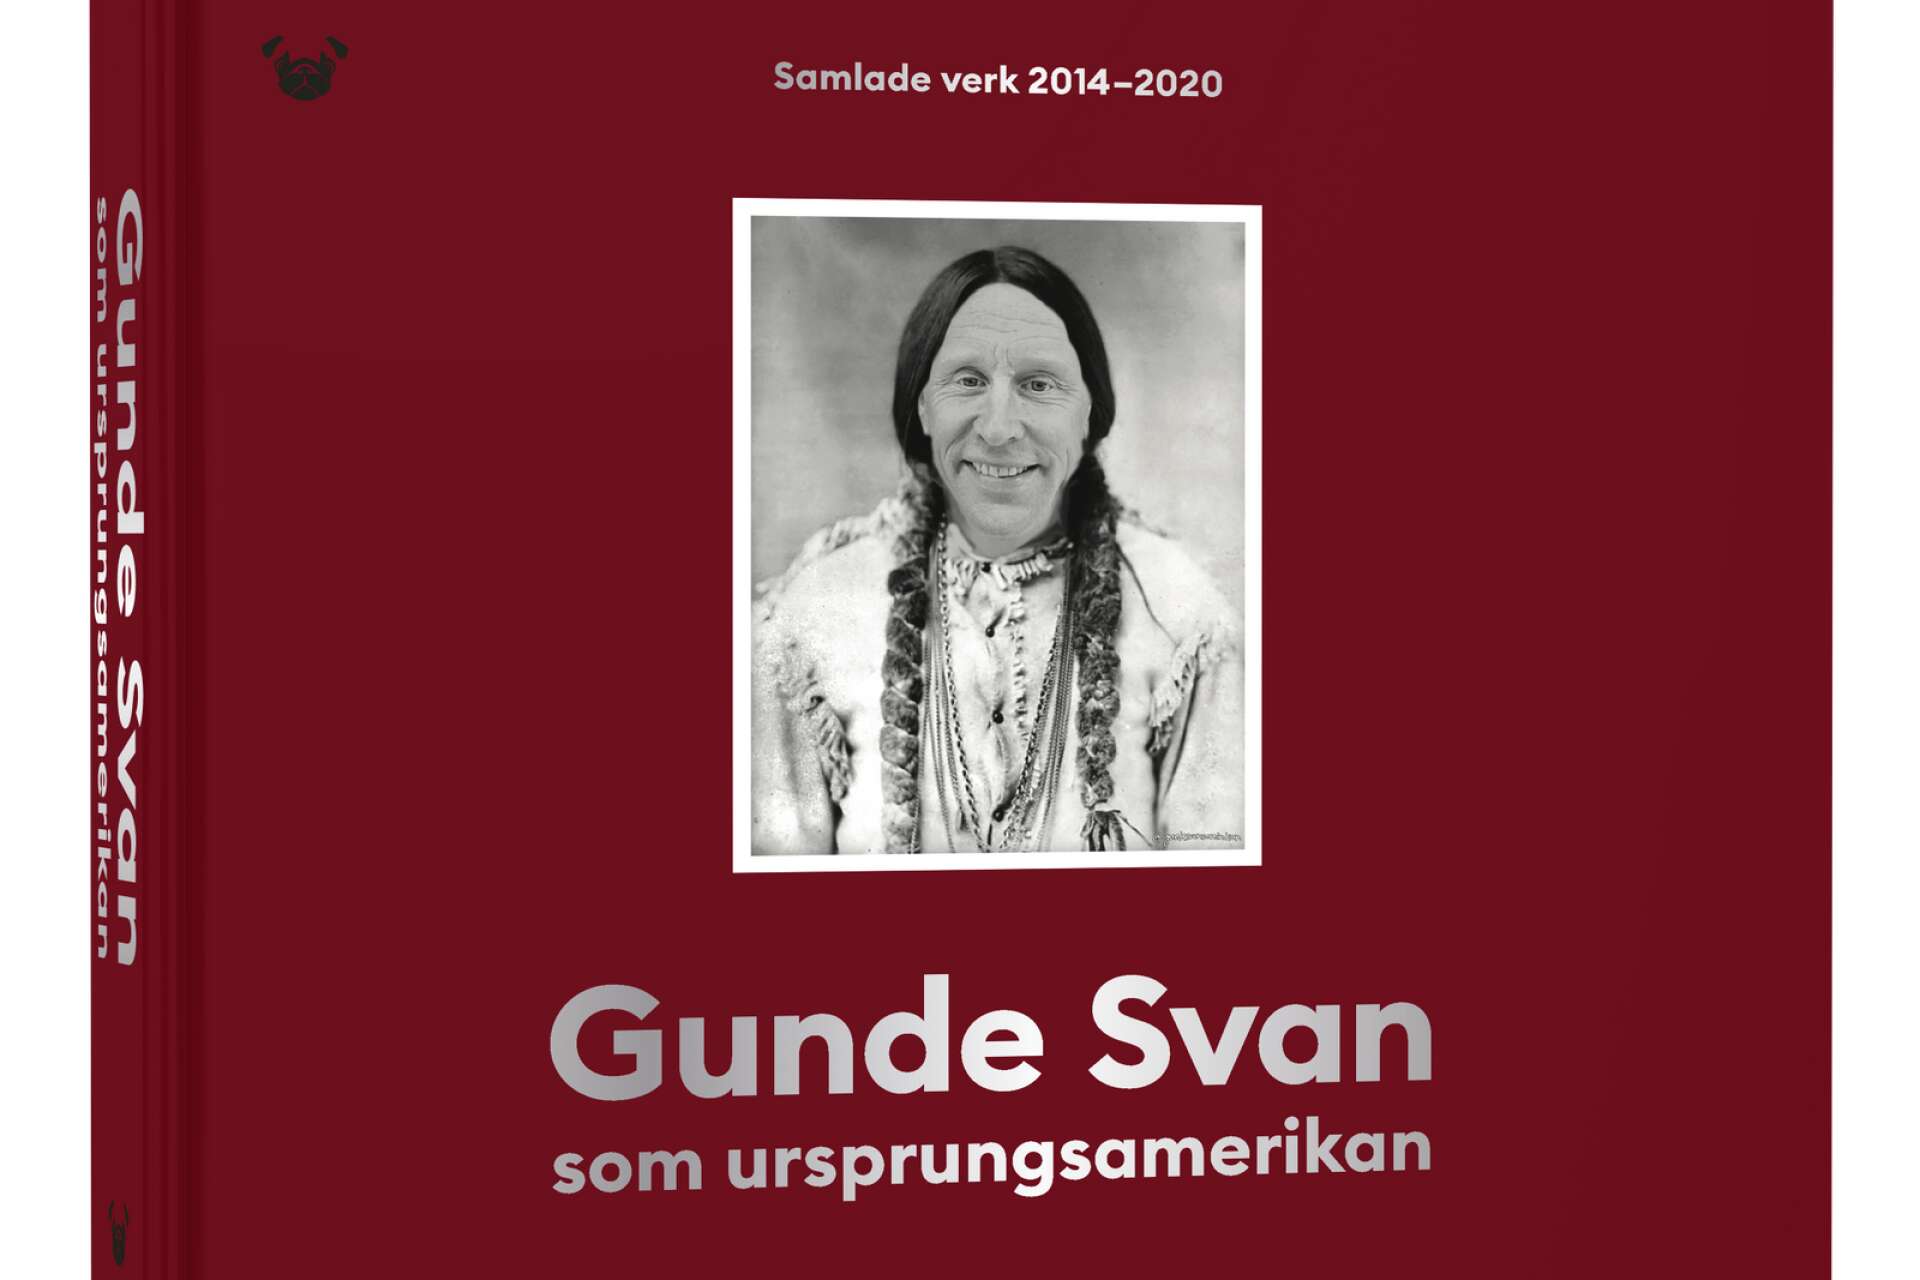 Gunde Svan som ursprungsindian har blivit bok. Flera kändisar än skidstjärnan får finna sig i att få nya roller i bilderna som Mikael Holmquist skapar.